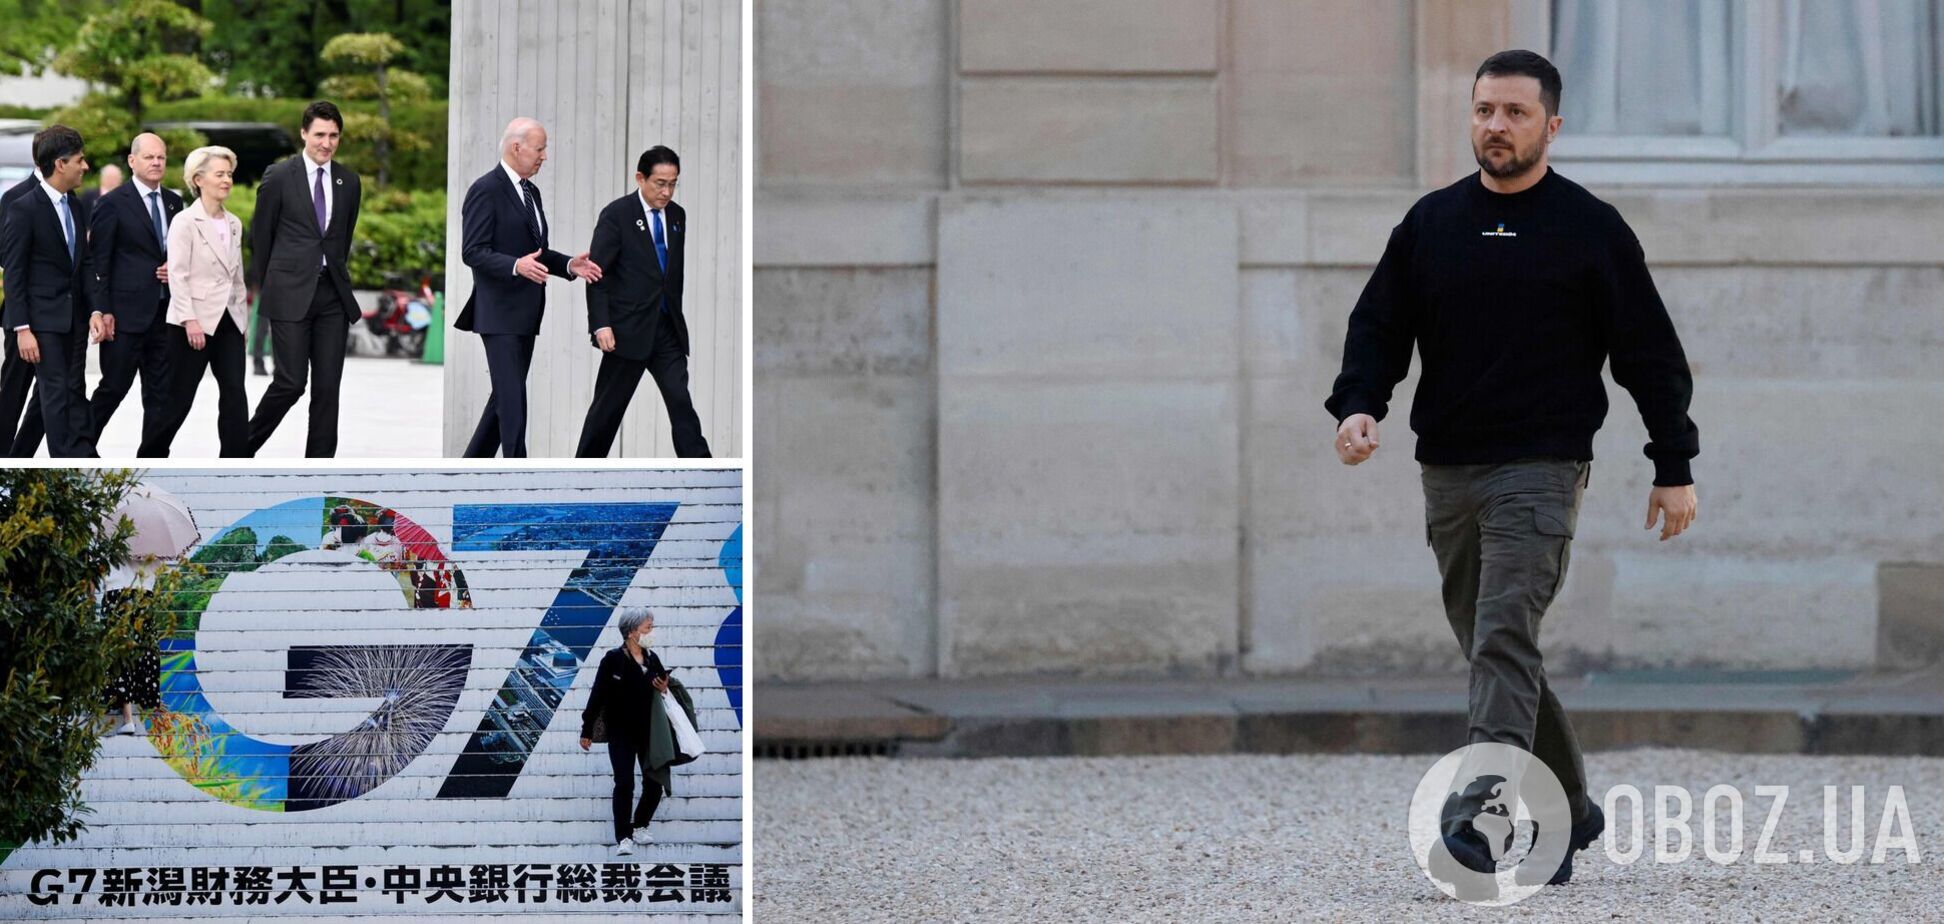 Зеленский будет присутствовать на саммите G7 в Японии, но онлайн: в СНБО сделали заявление